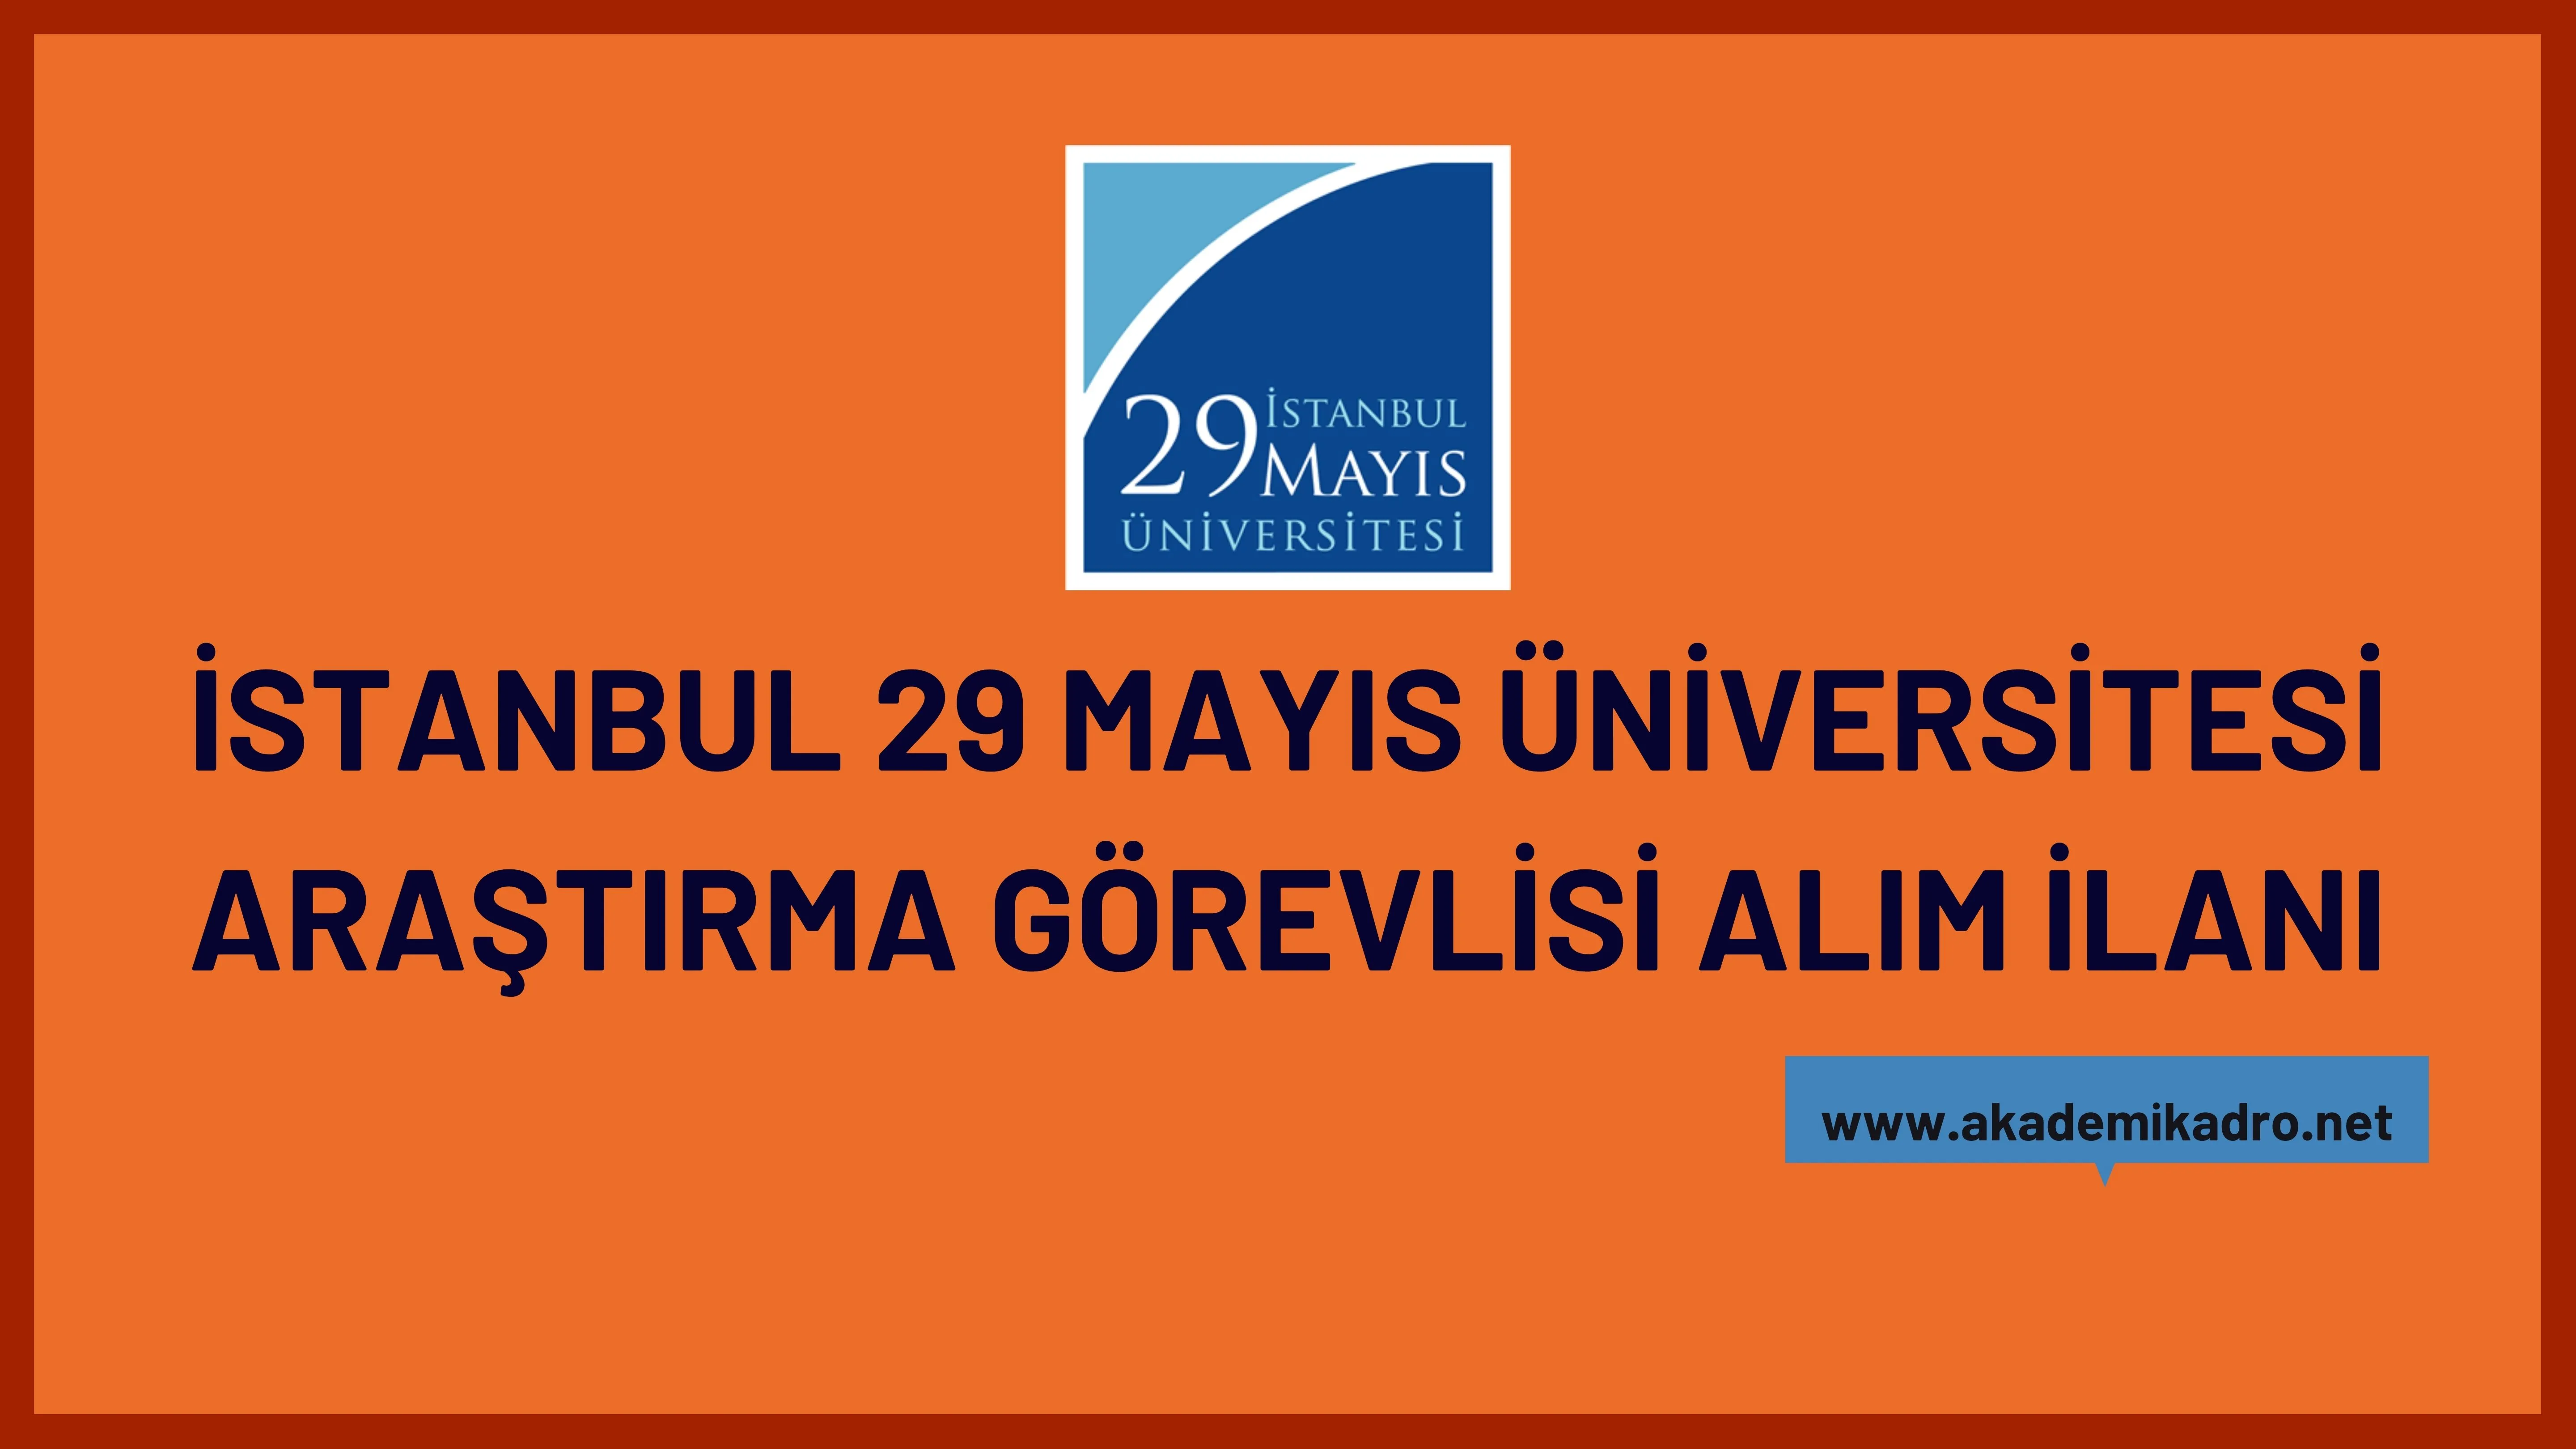 İstanbul 29 Mayıs Üniversitesi 7 Araştırma görevlisi alacaktır. Son başvuru tarihi 12 Mayıs 2023